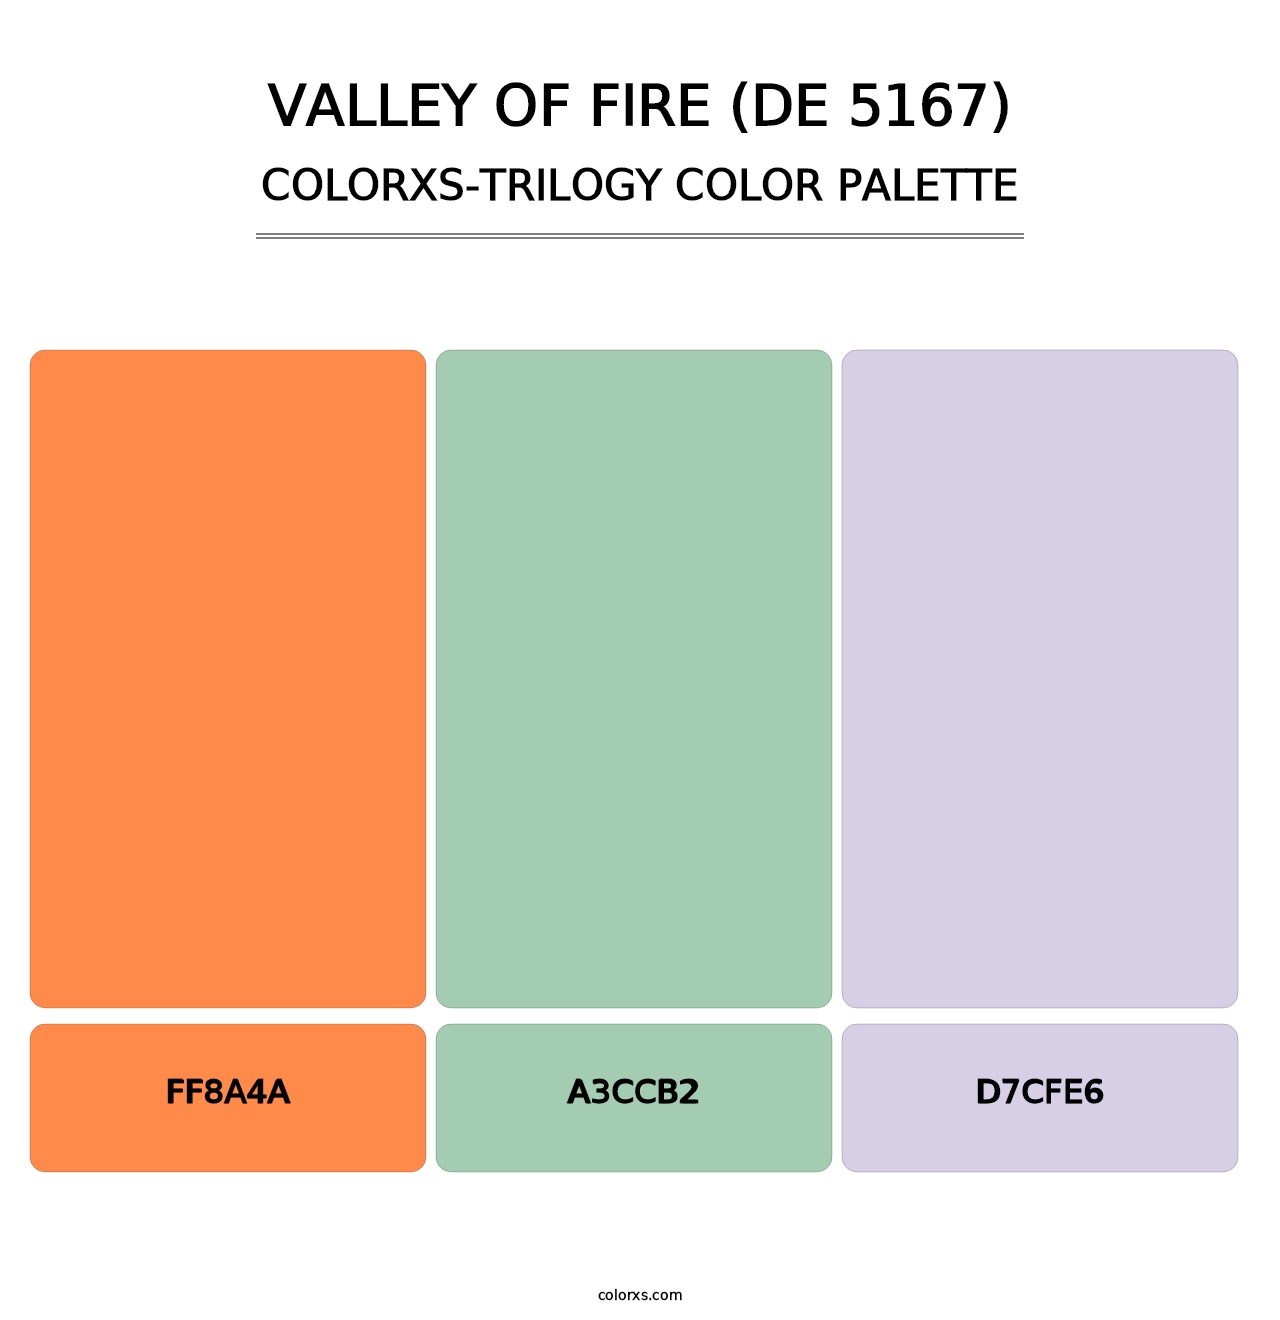 Valley of Fire (DE 5167) - Colorxs Trilogy Palette